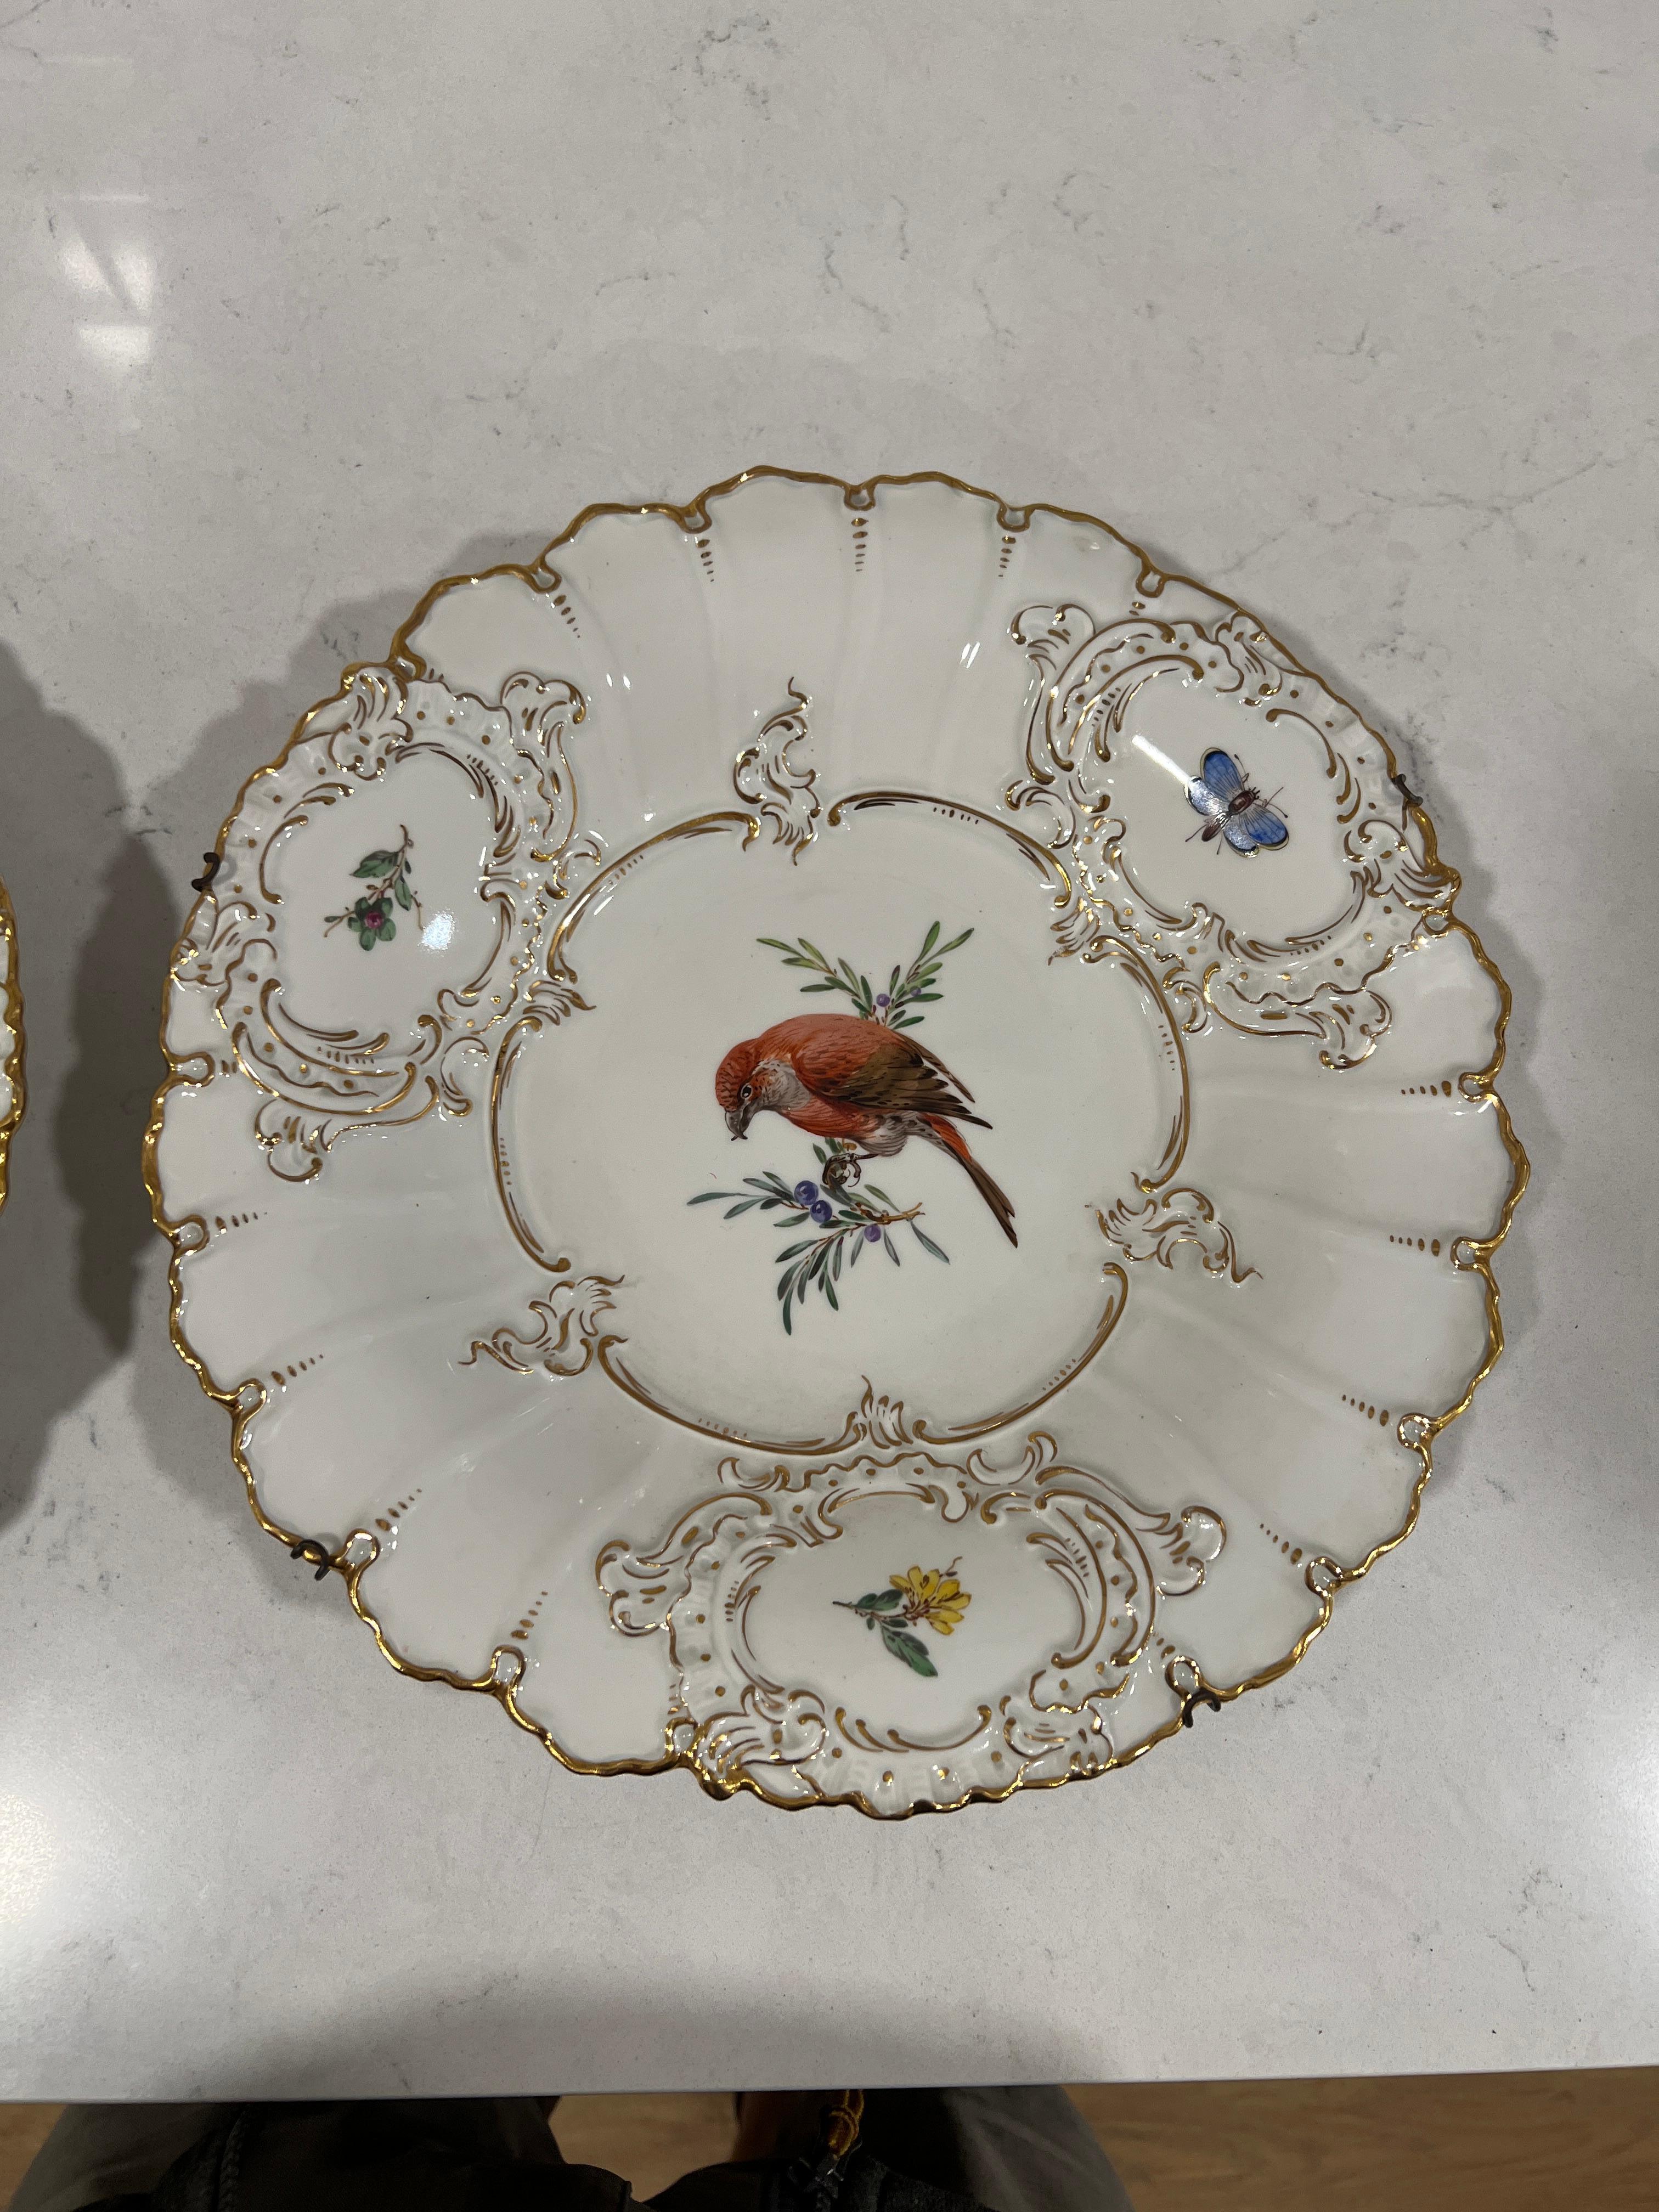 Meissen (deutsch, gegründet 1710), 20. Jahrhundert.

Ein Paar feiner Porzellanteller, die zwei handgemalte Vögel darstellen. Jeder zentrale Vogel, der auf einem Zweig sitzt, ist von einer feinen Vergoldung und drei Fenstern umgeben (zwei davon